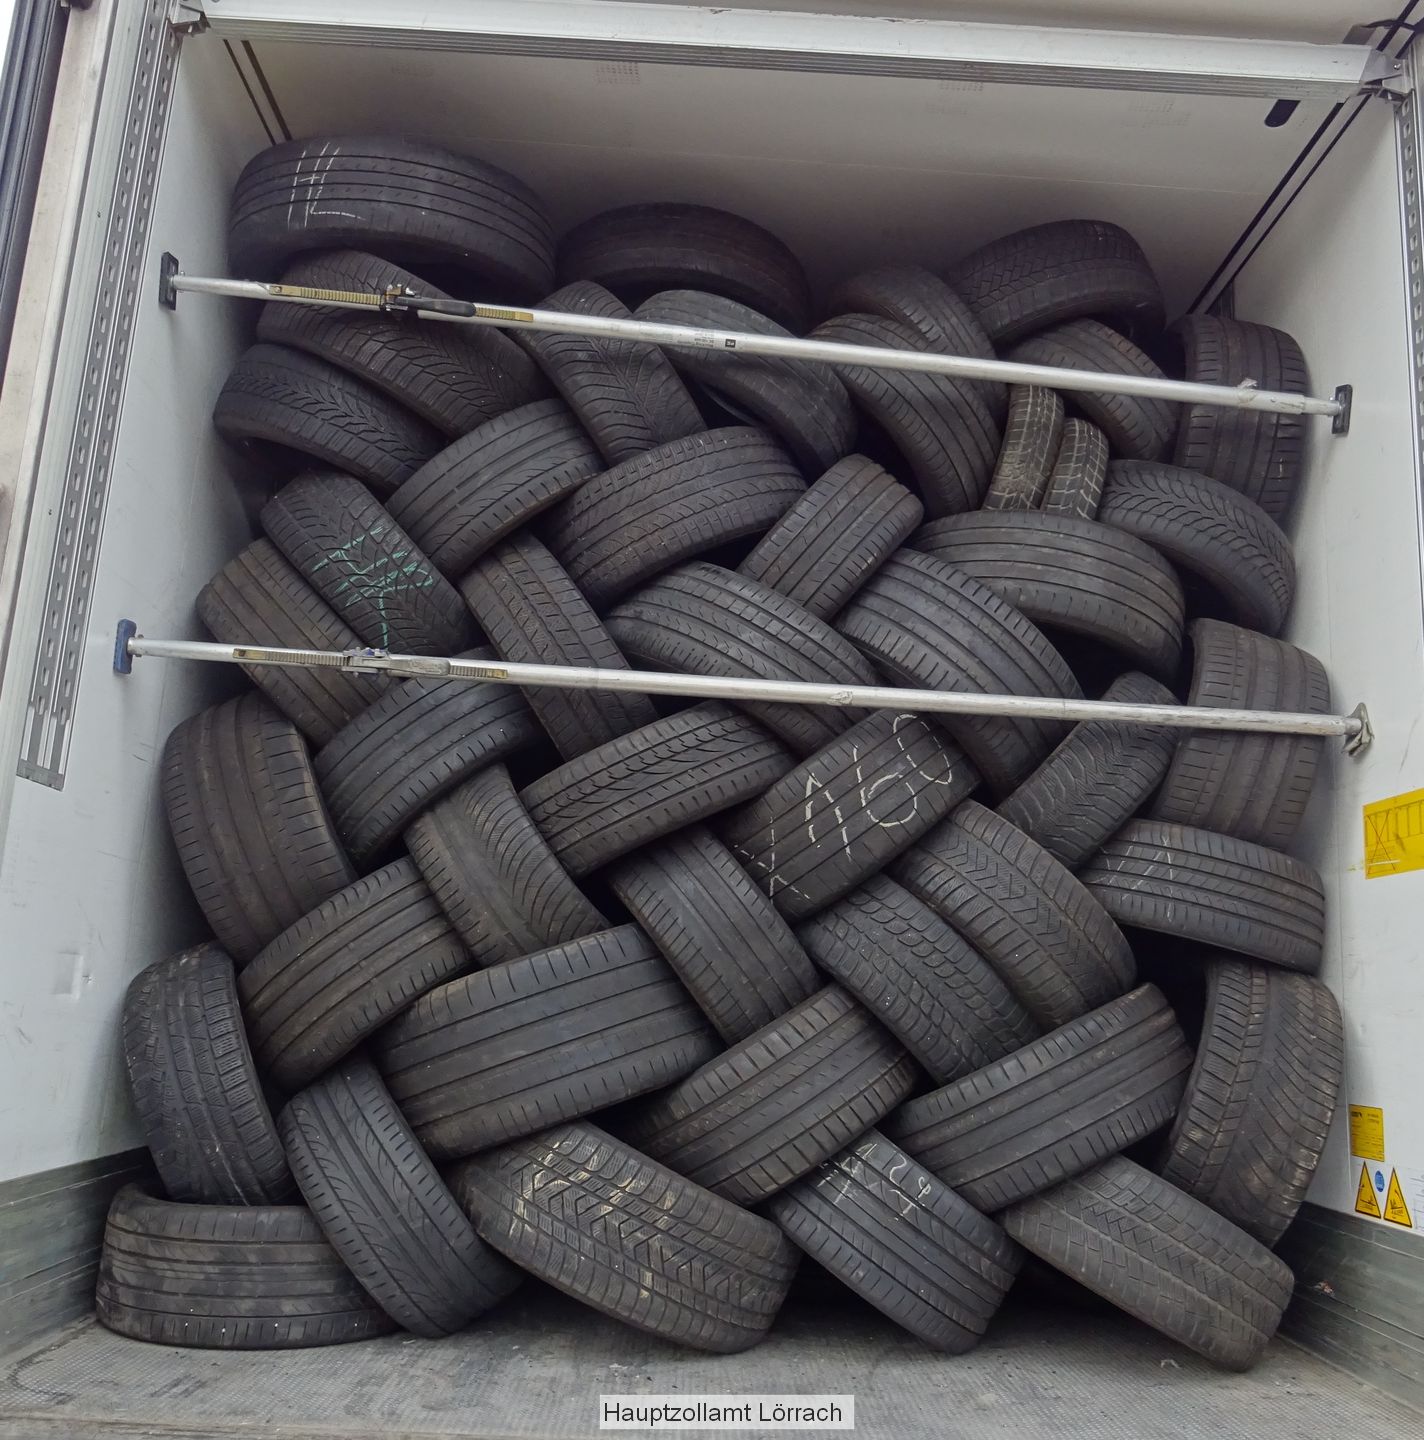 Zollamt stuft Reifen als Abfall ein und weist Import zurück